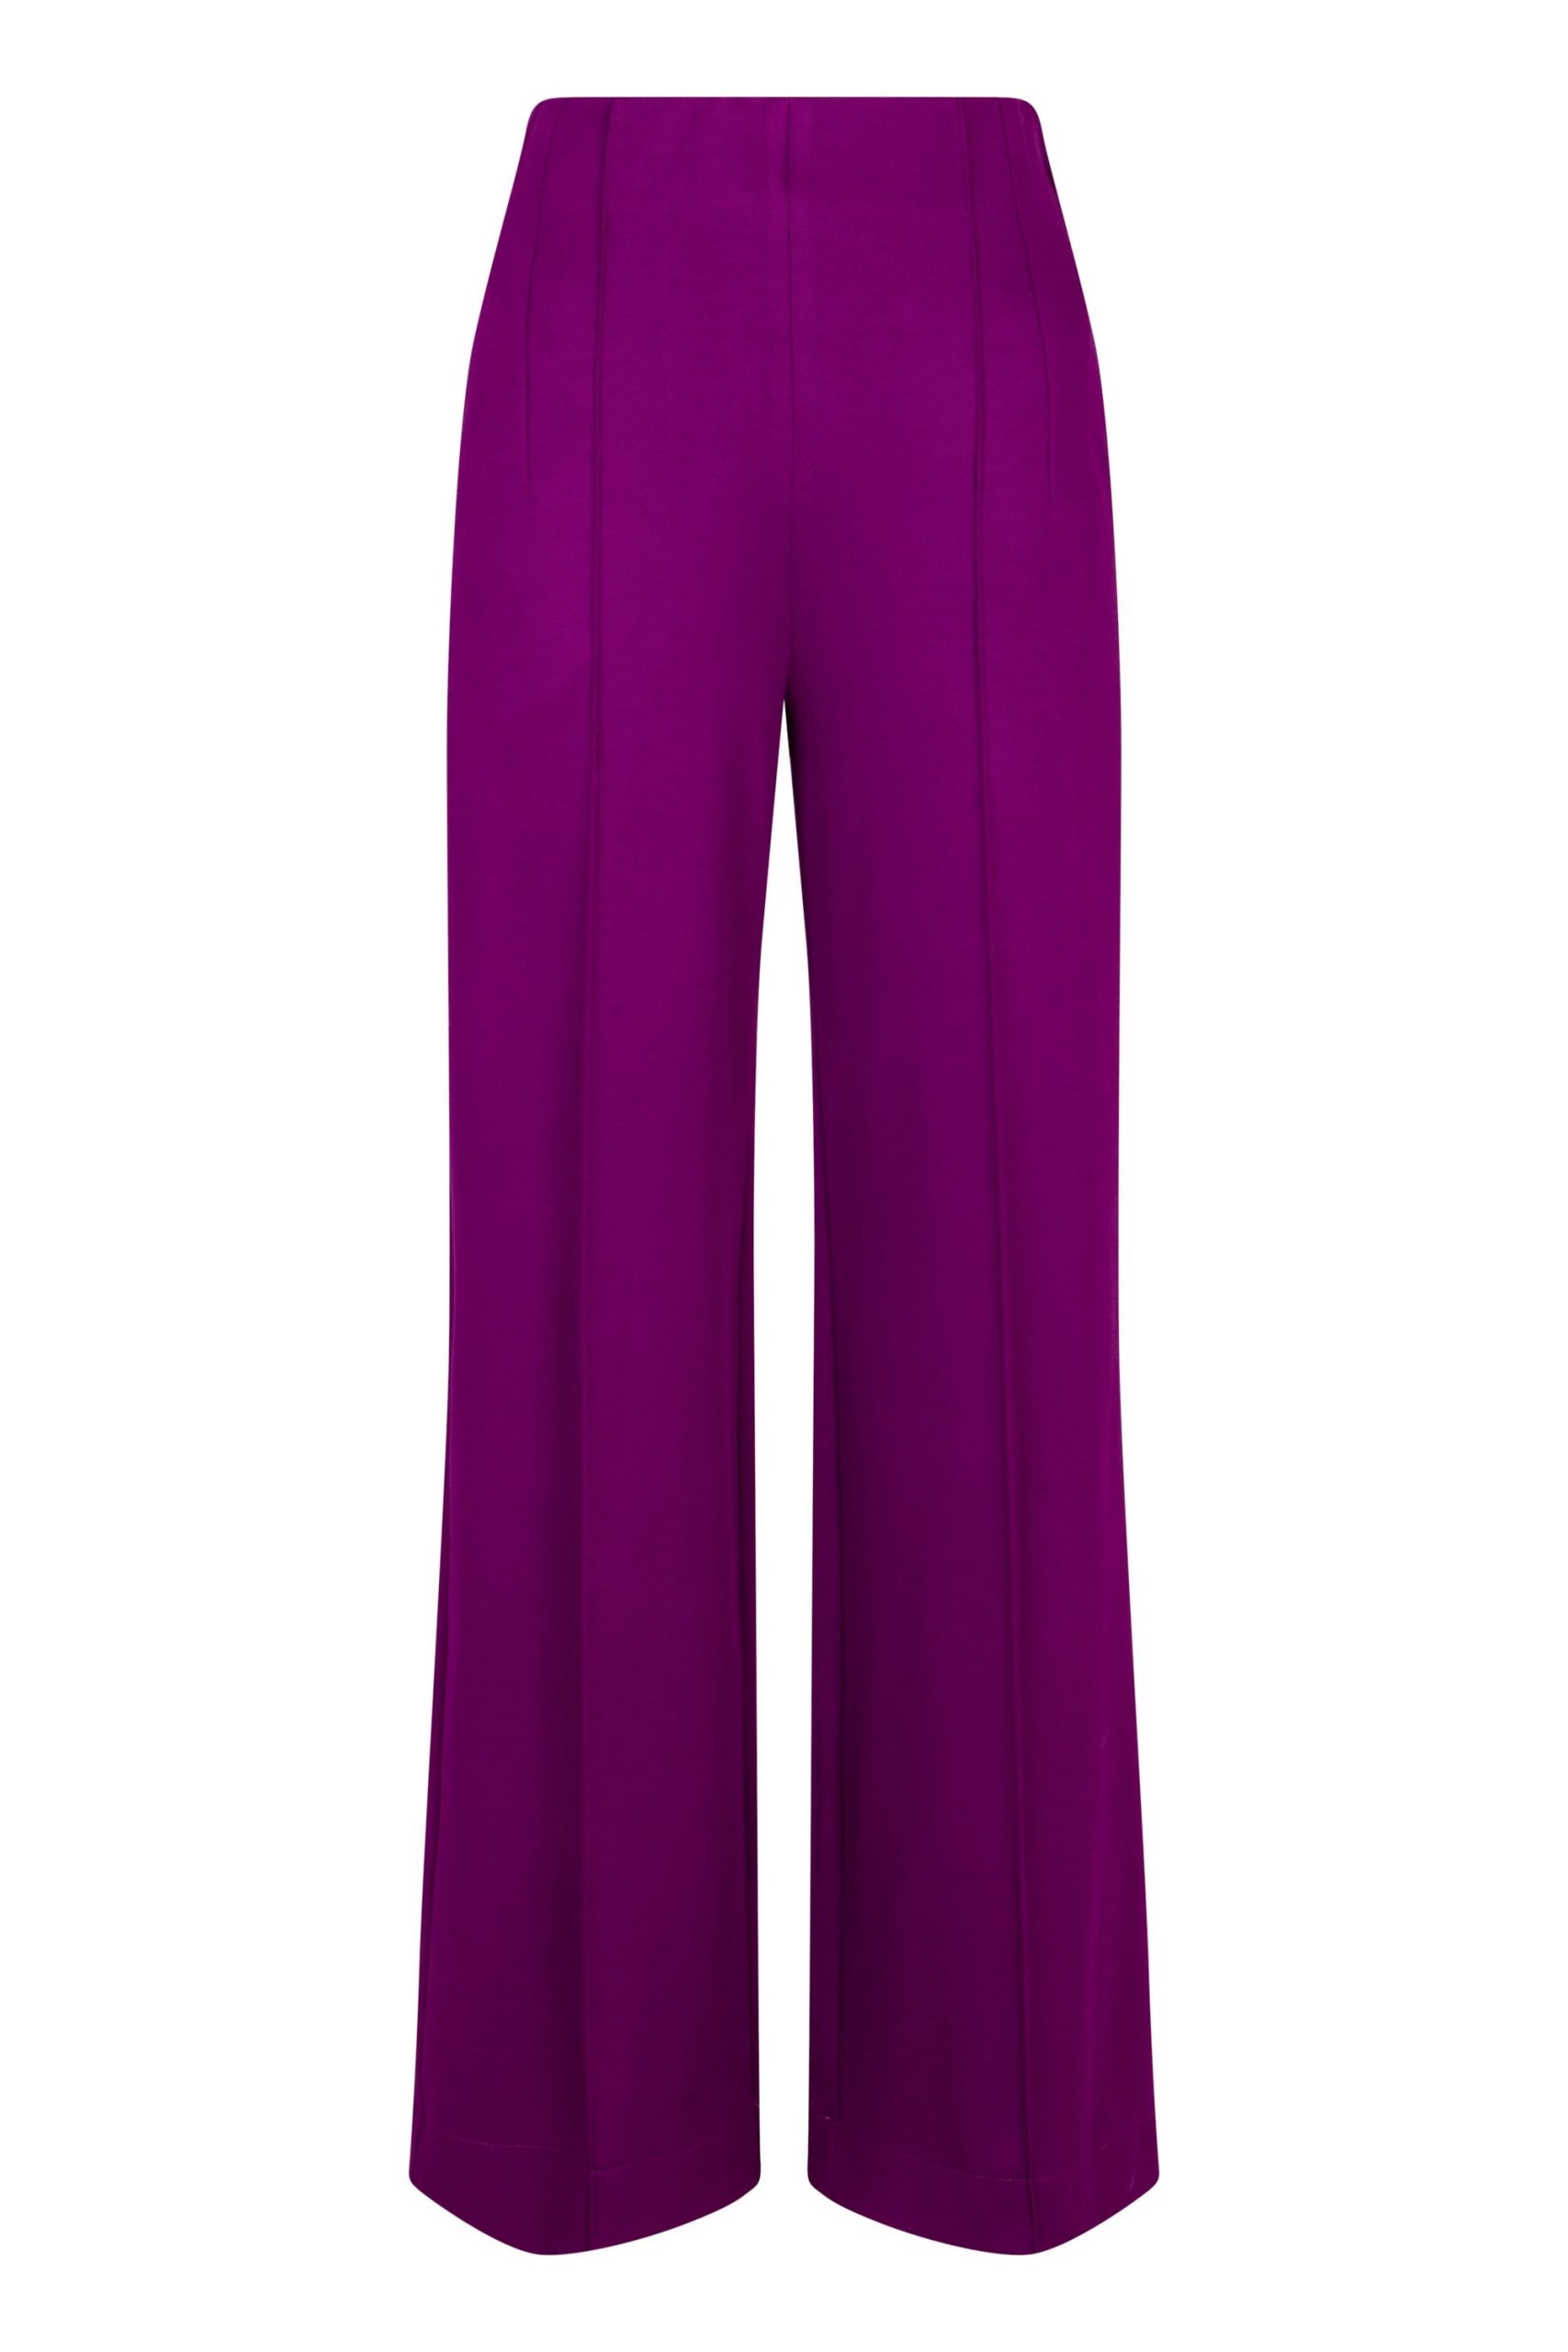 Długie garniturowe fioletowe spodnie w kant